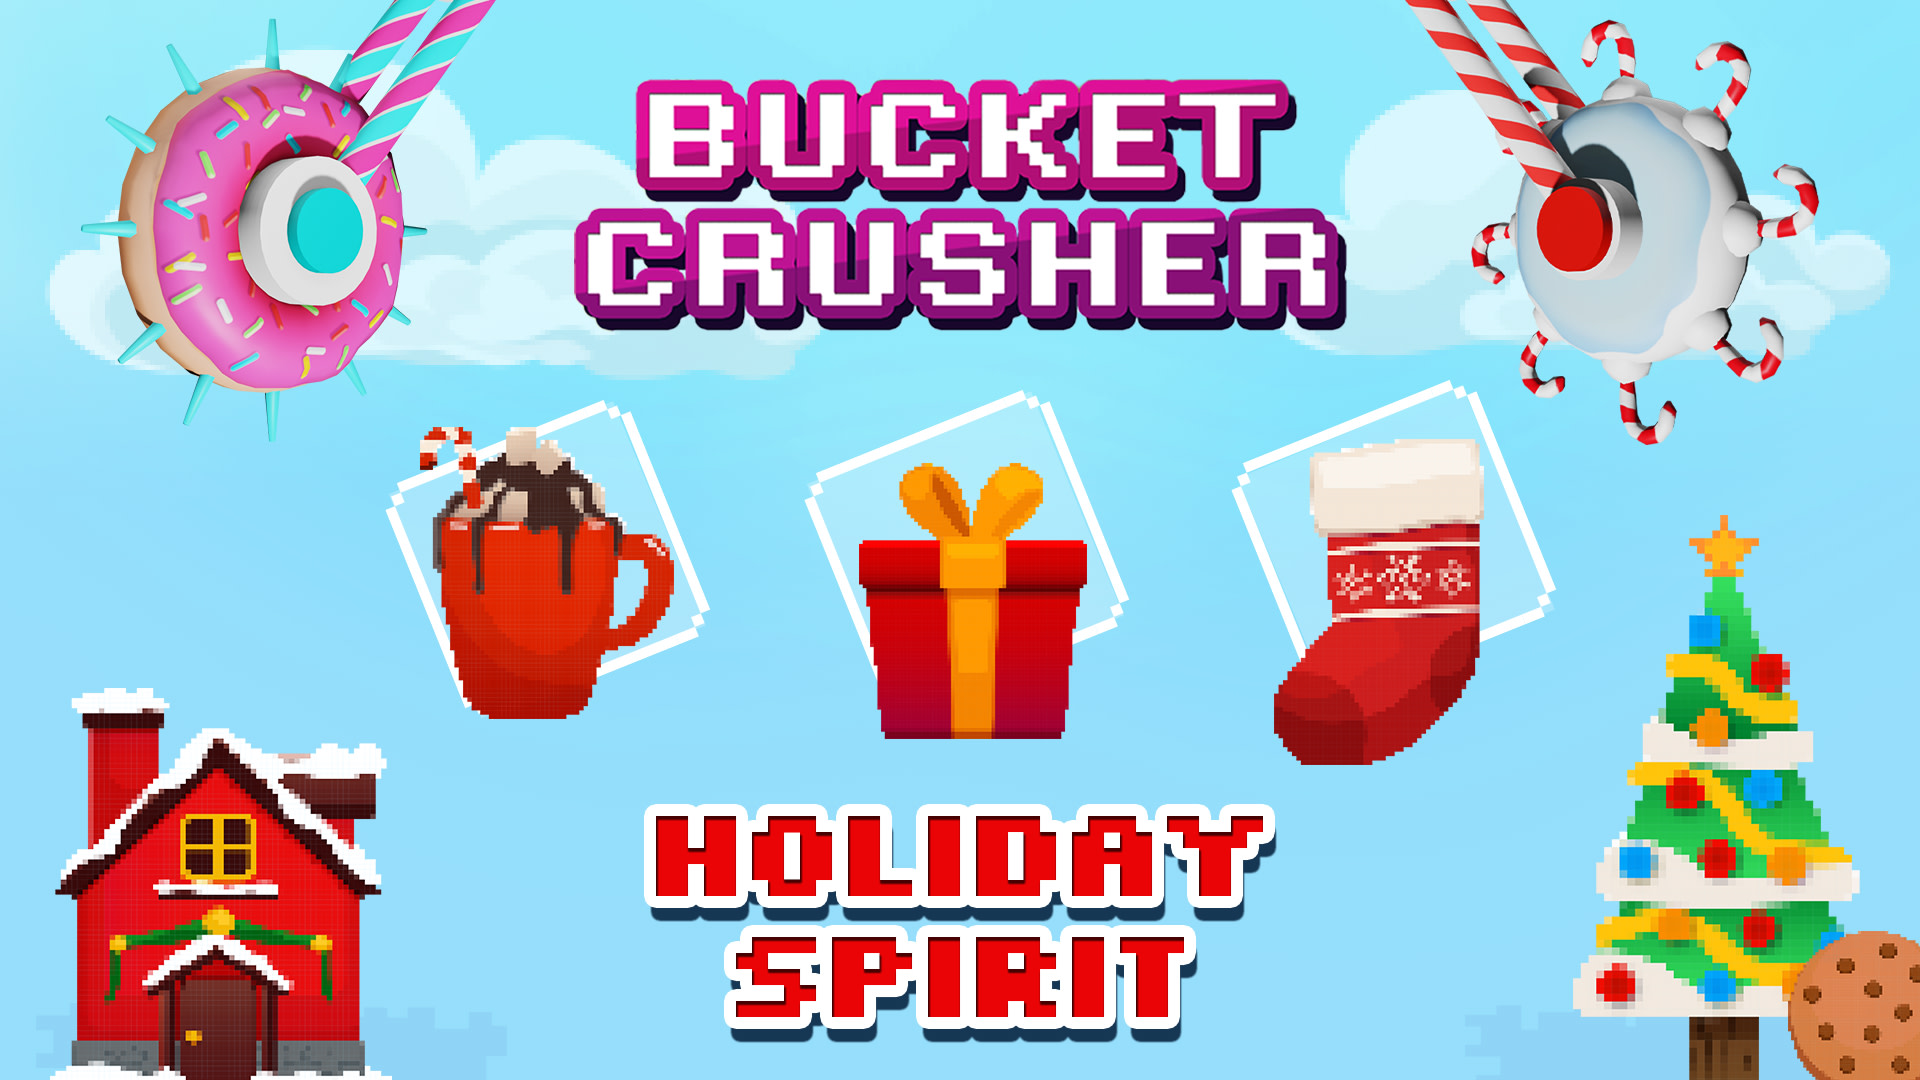 Bucket Crusher: Holiday Spirit 